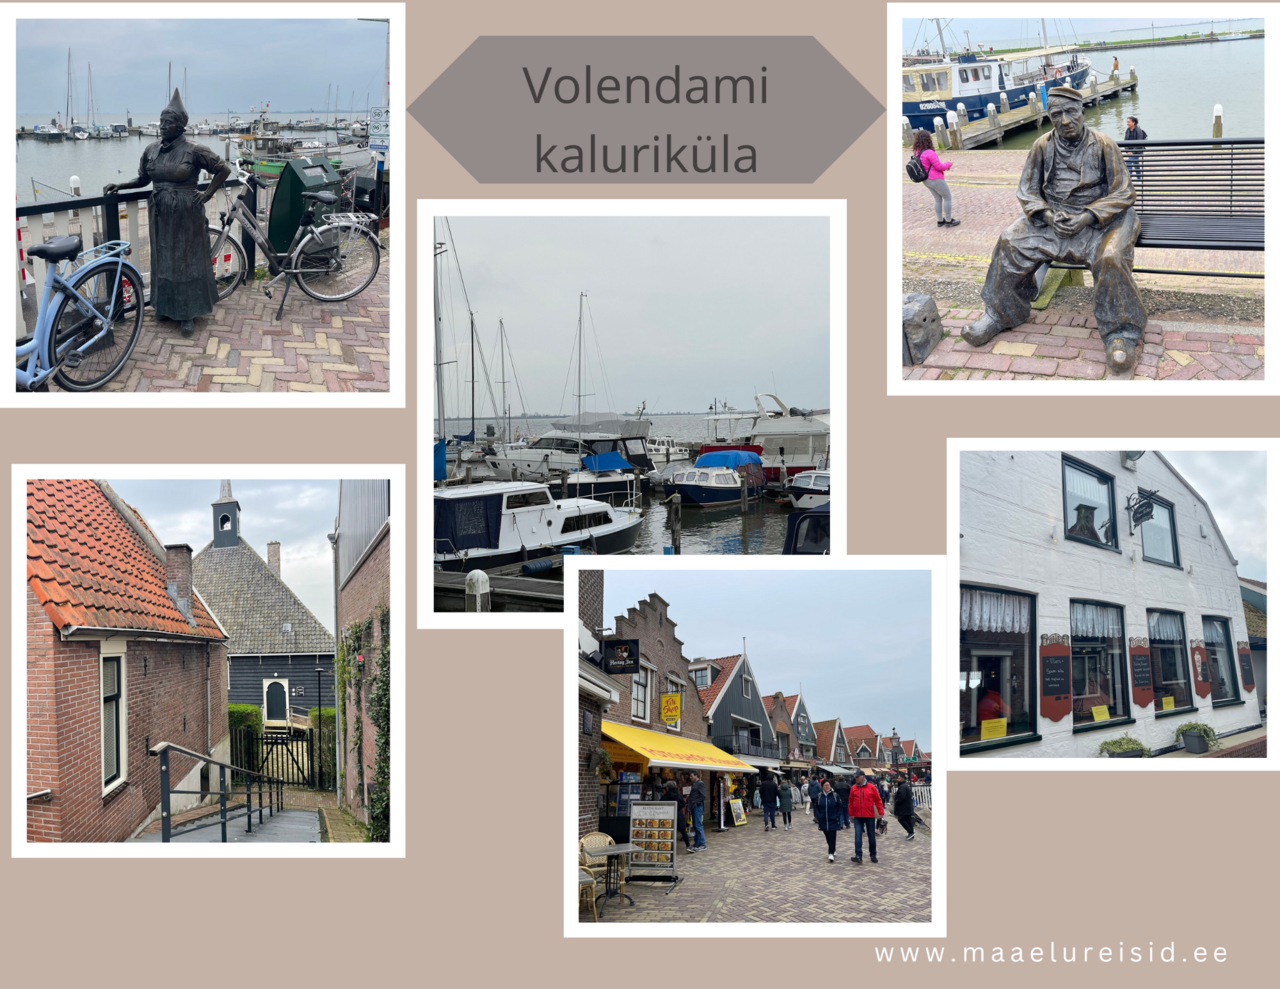 Volendami kaluriküla - Hollandit viib avastama Maaelureisid